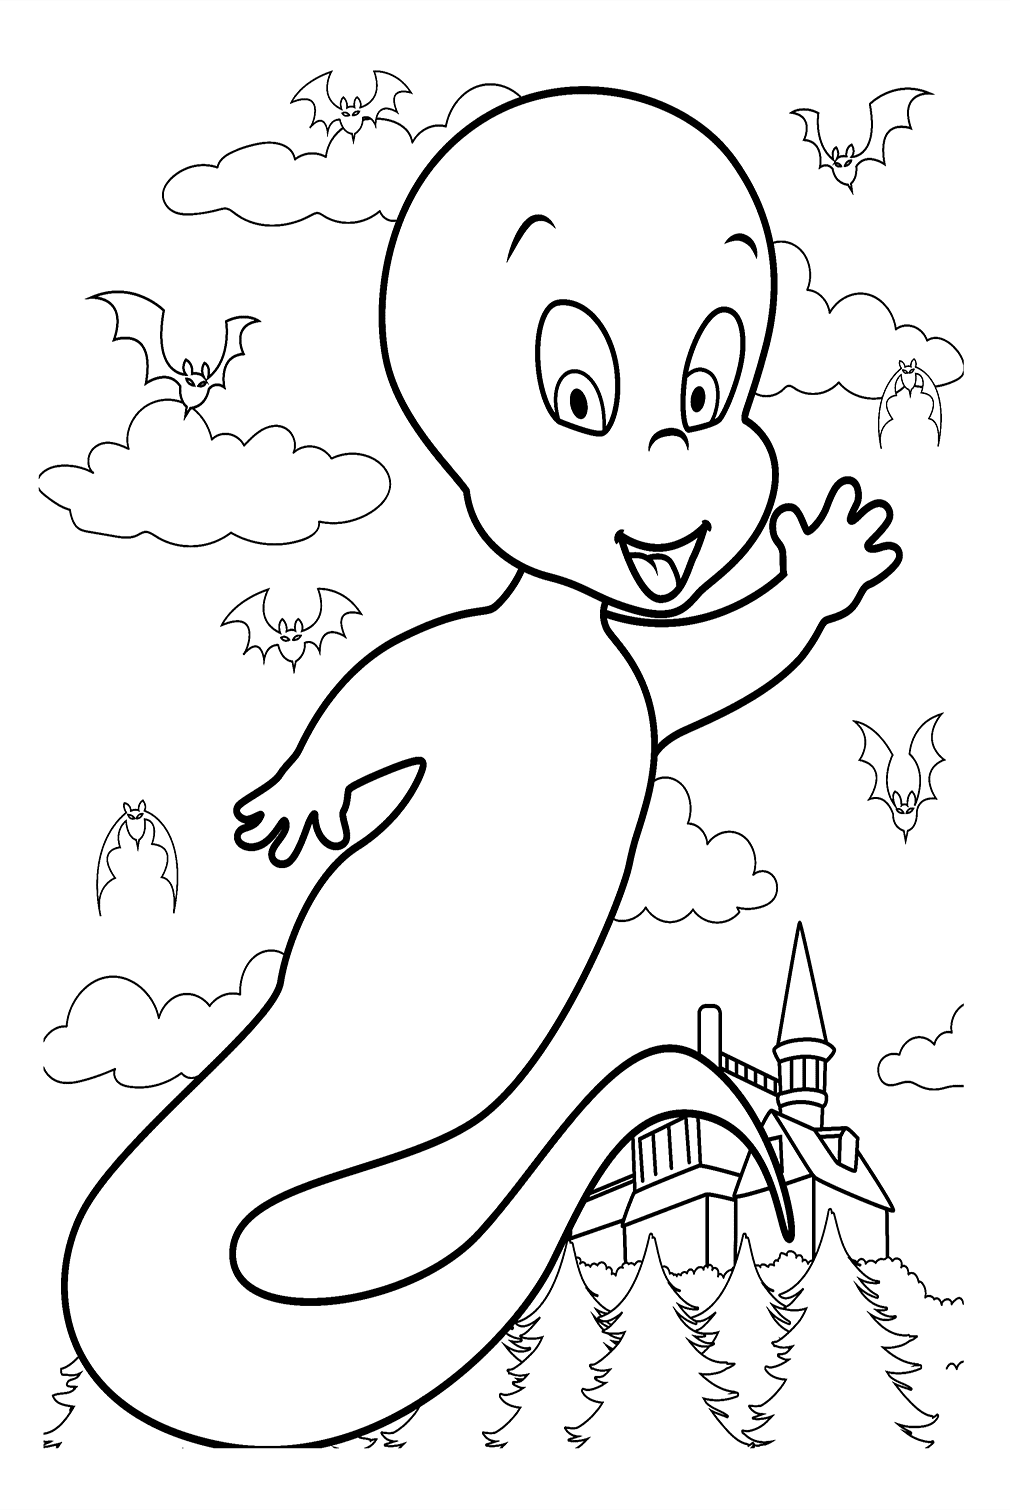 Página para colorear de Casper Ghost de Ghost